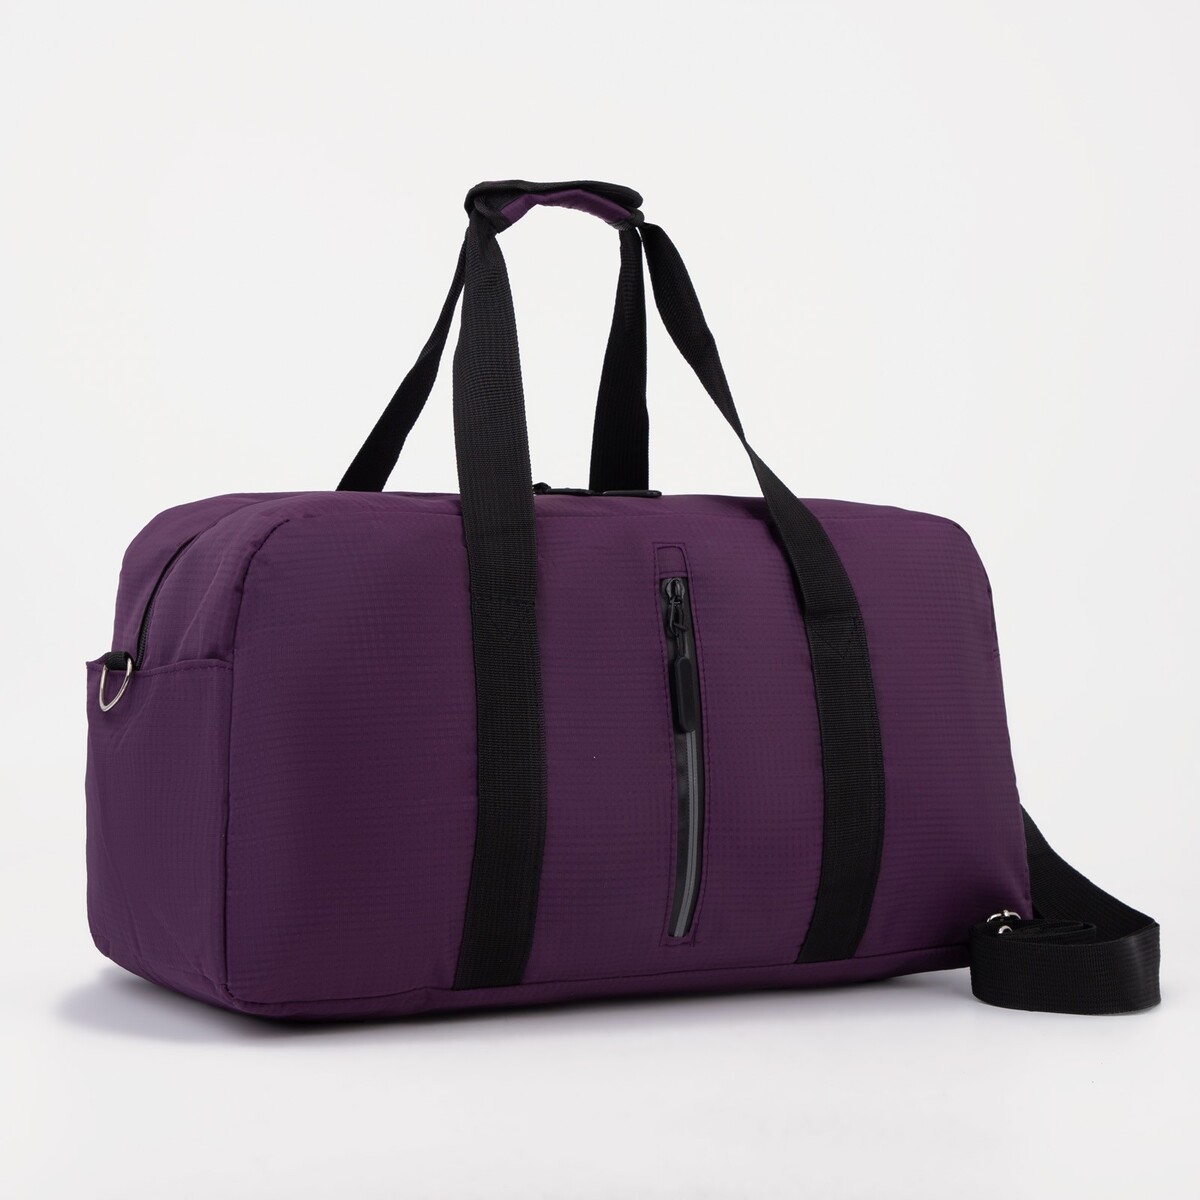 Сумка спортивная на молнии, 2 наружных кармана, цвет фиолетовый сумка спортивная котик 40х21х24см фиолетовый